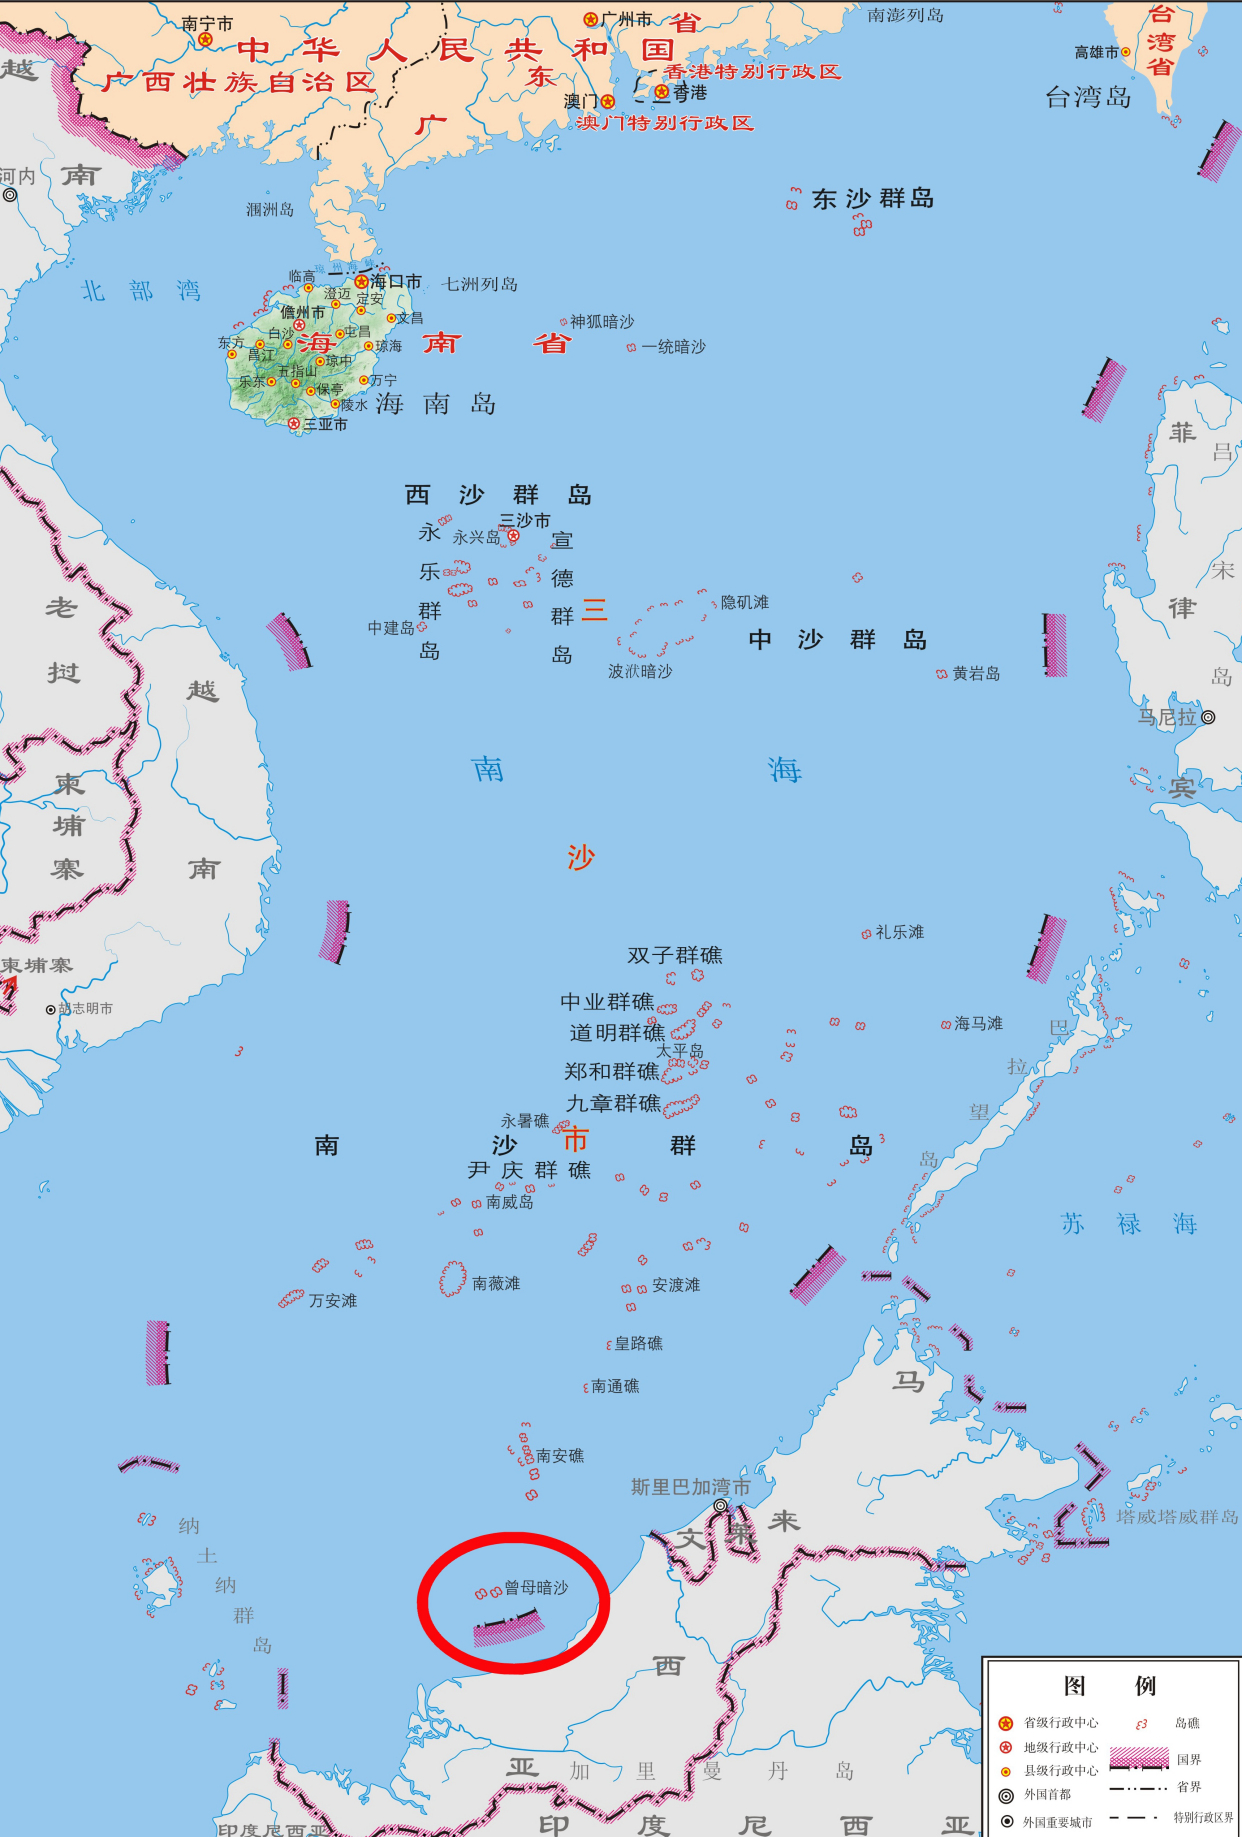 曾母暗沙难以驻守,但附近已有暗礁发育为岛屿,成中国最南端陆地